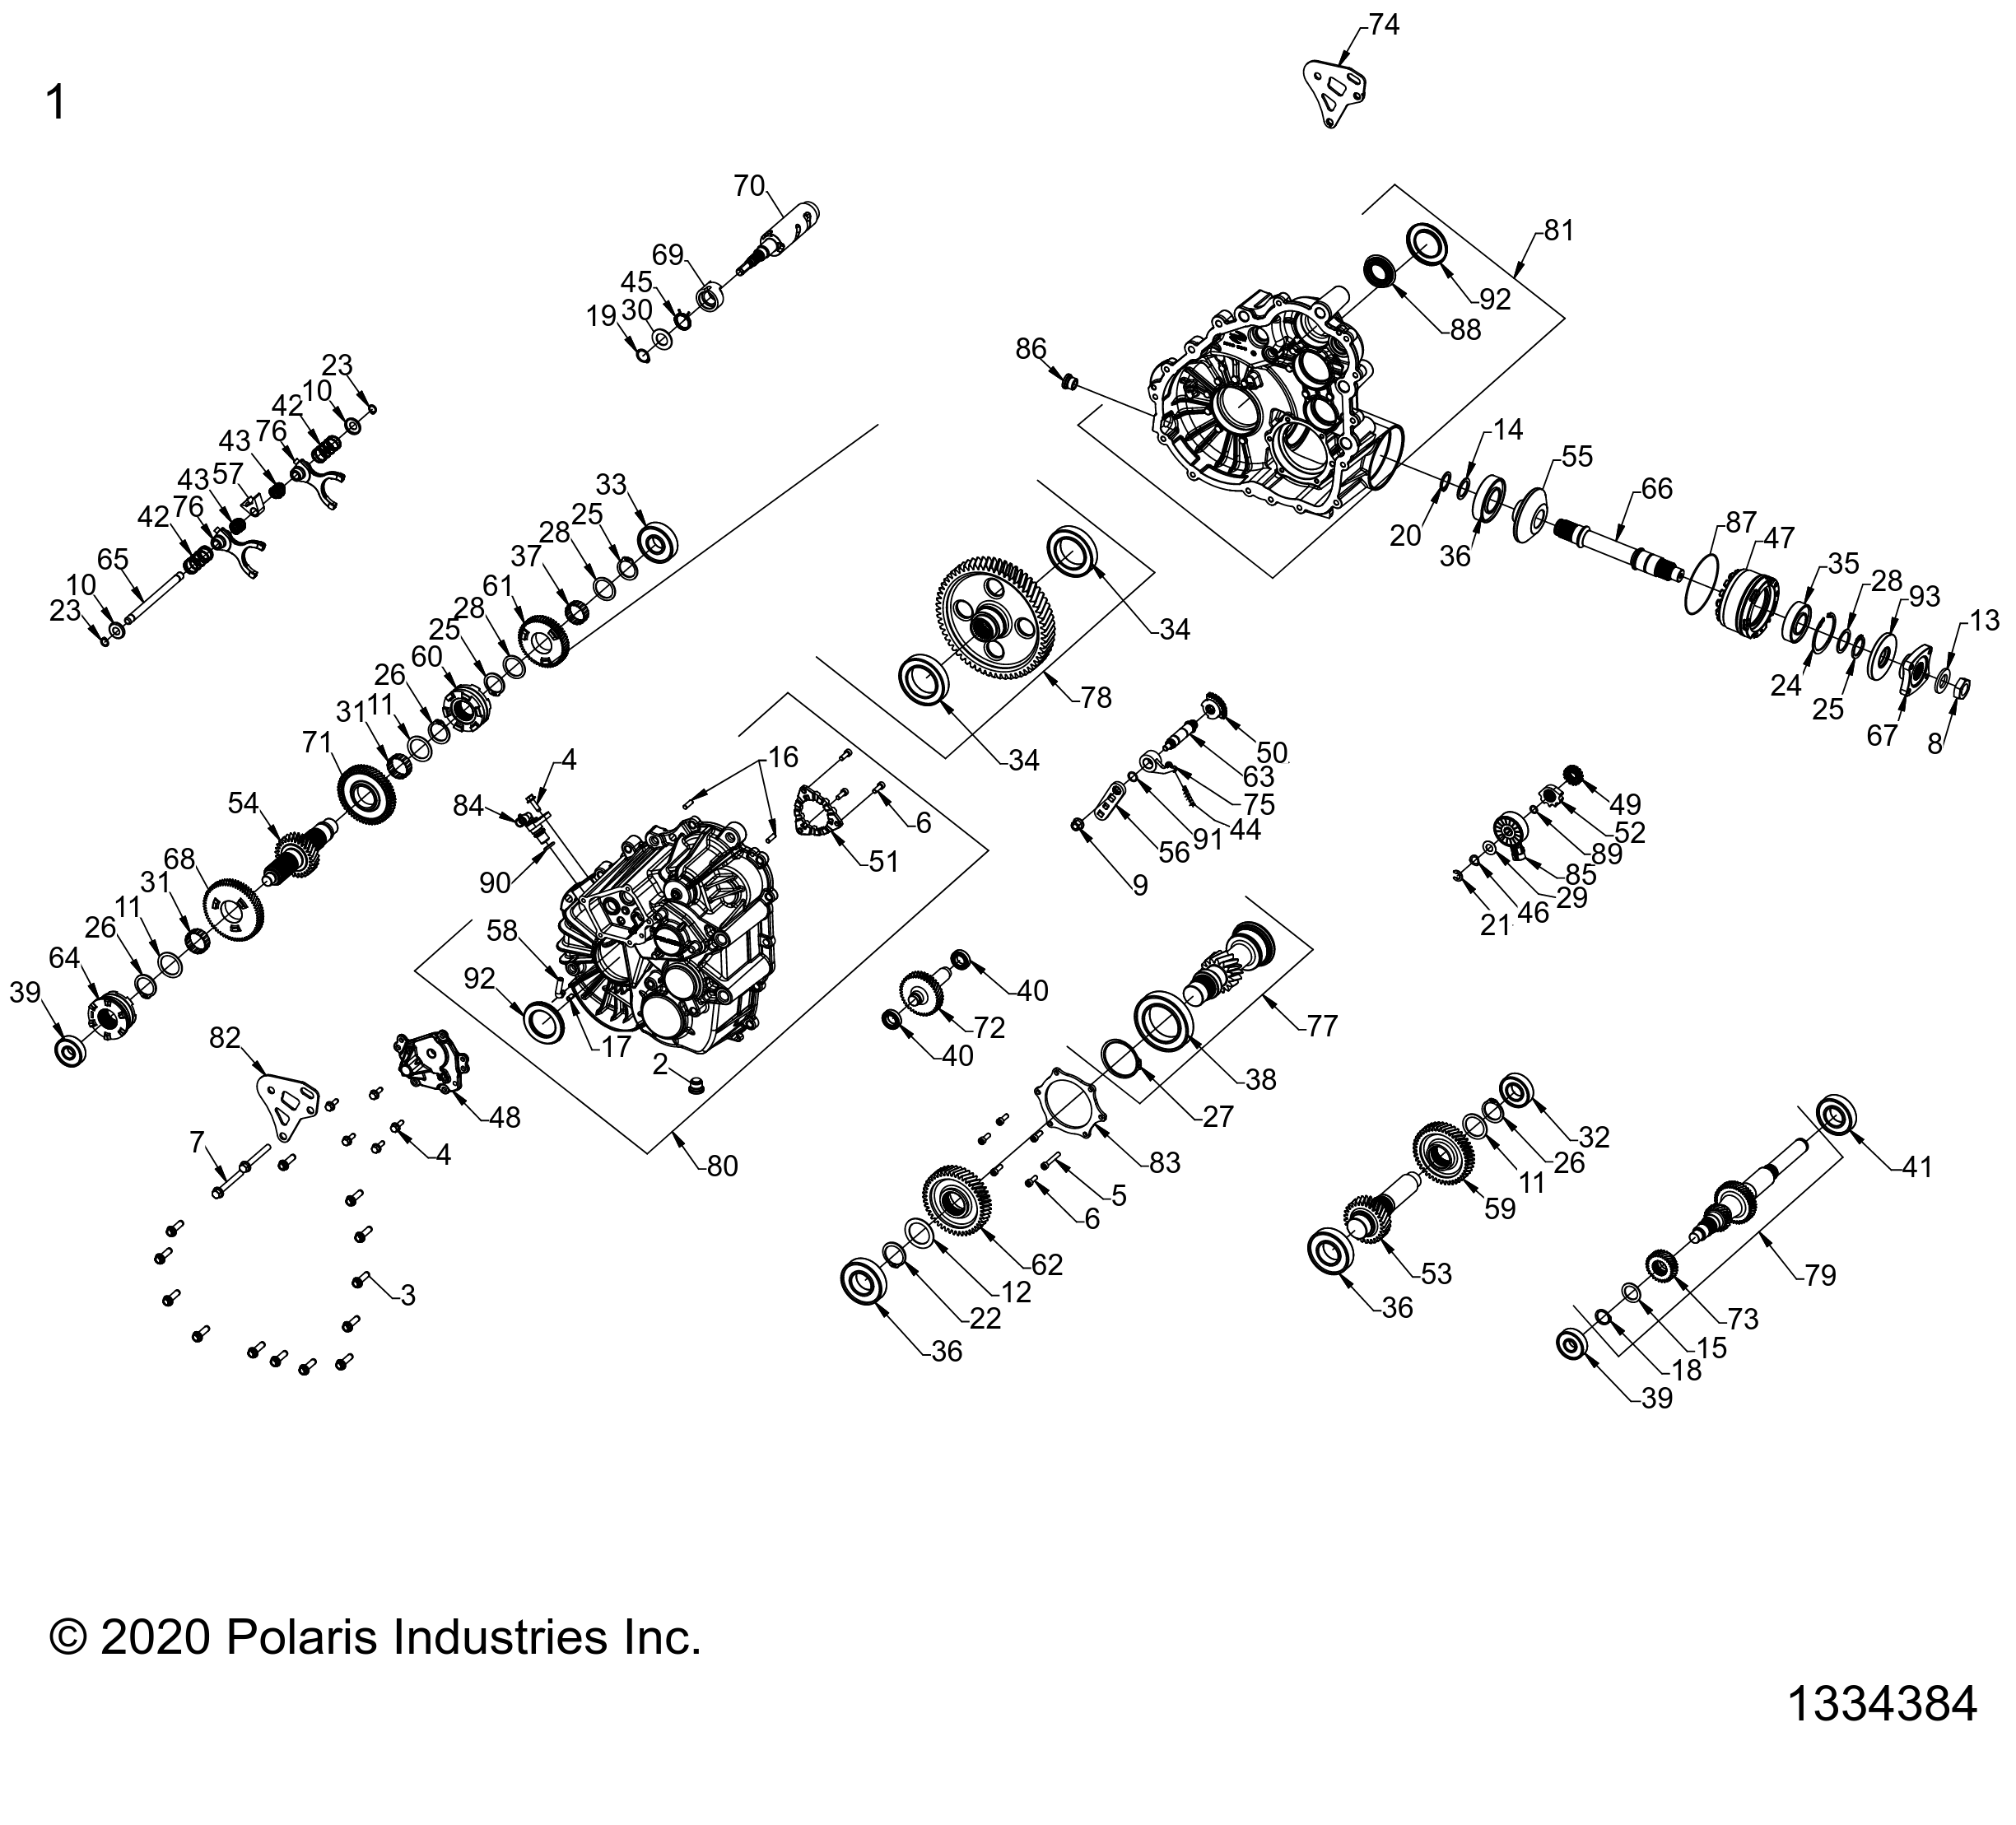 Foto diagrama Polaris que contem a peça 3235847